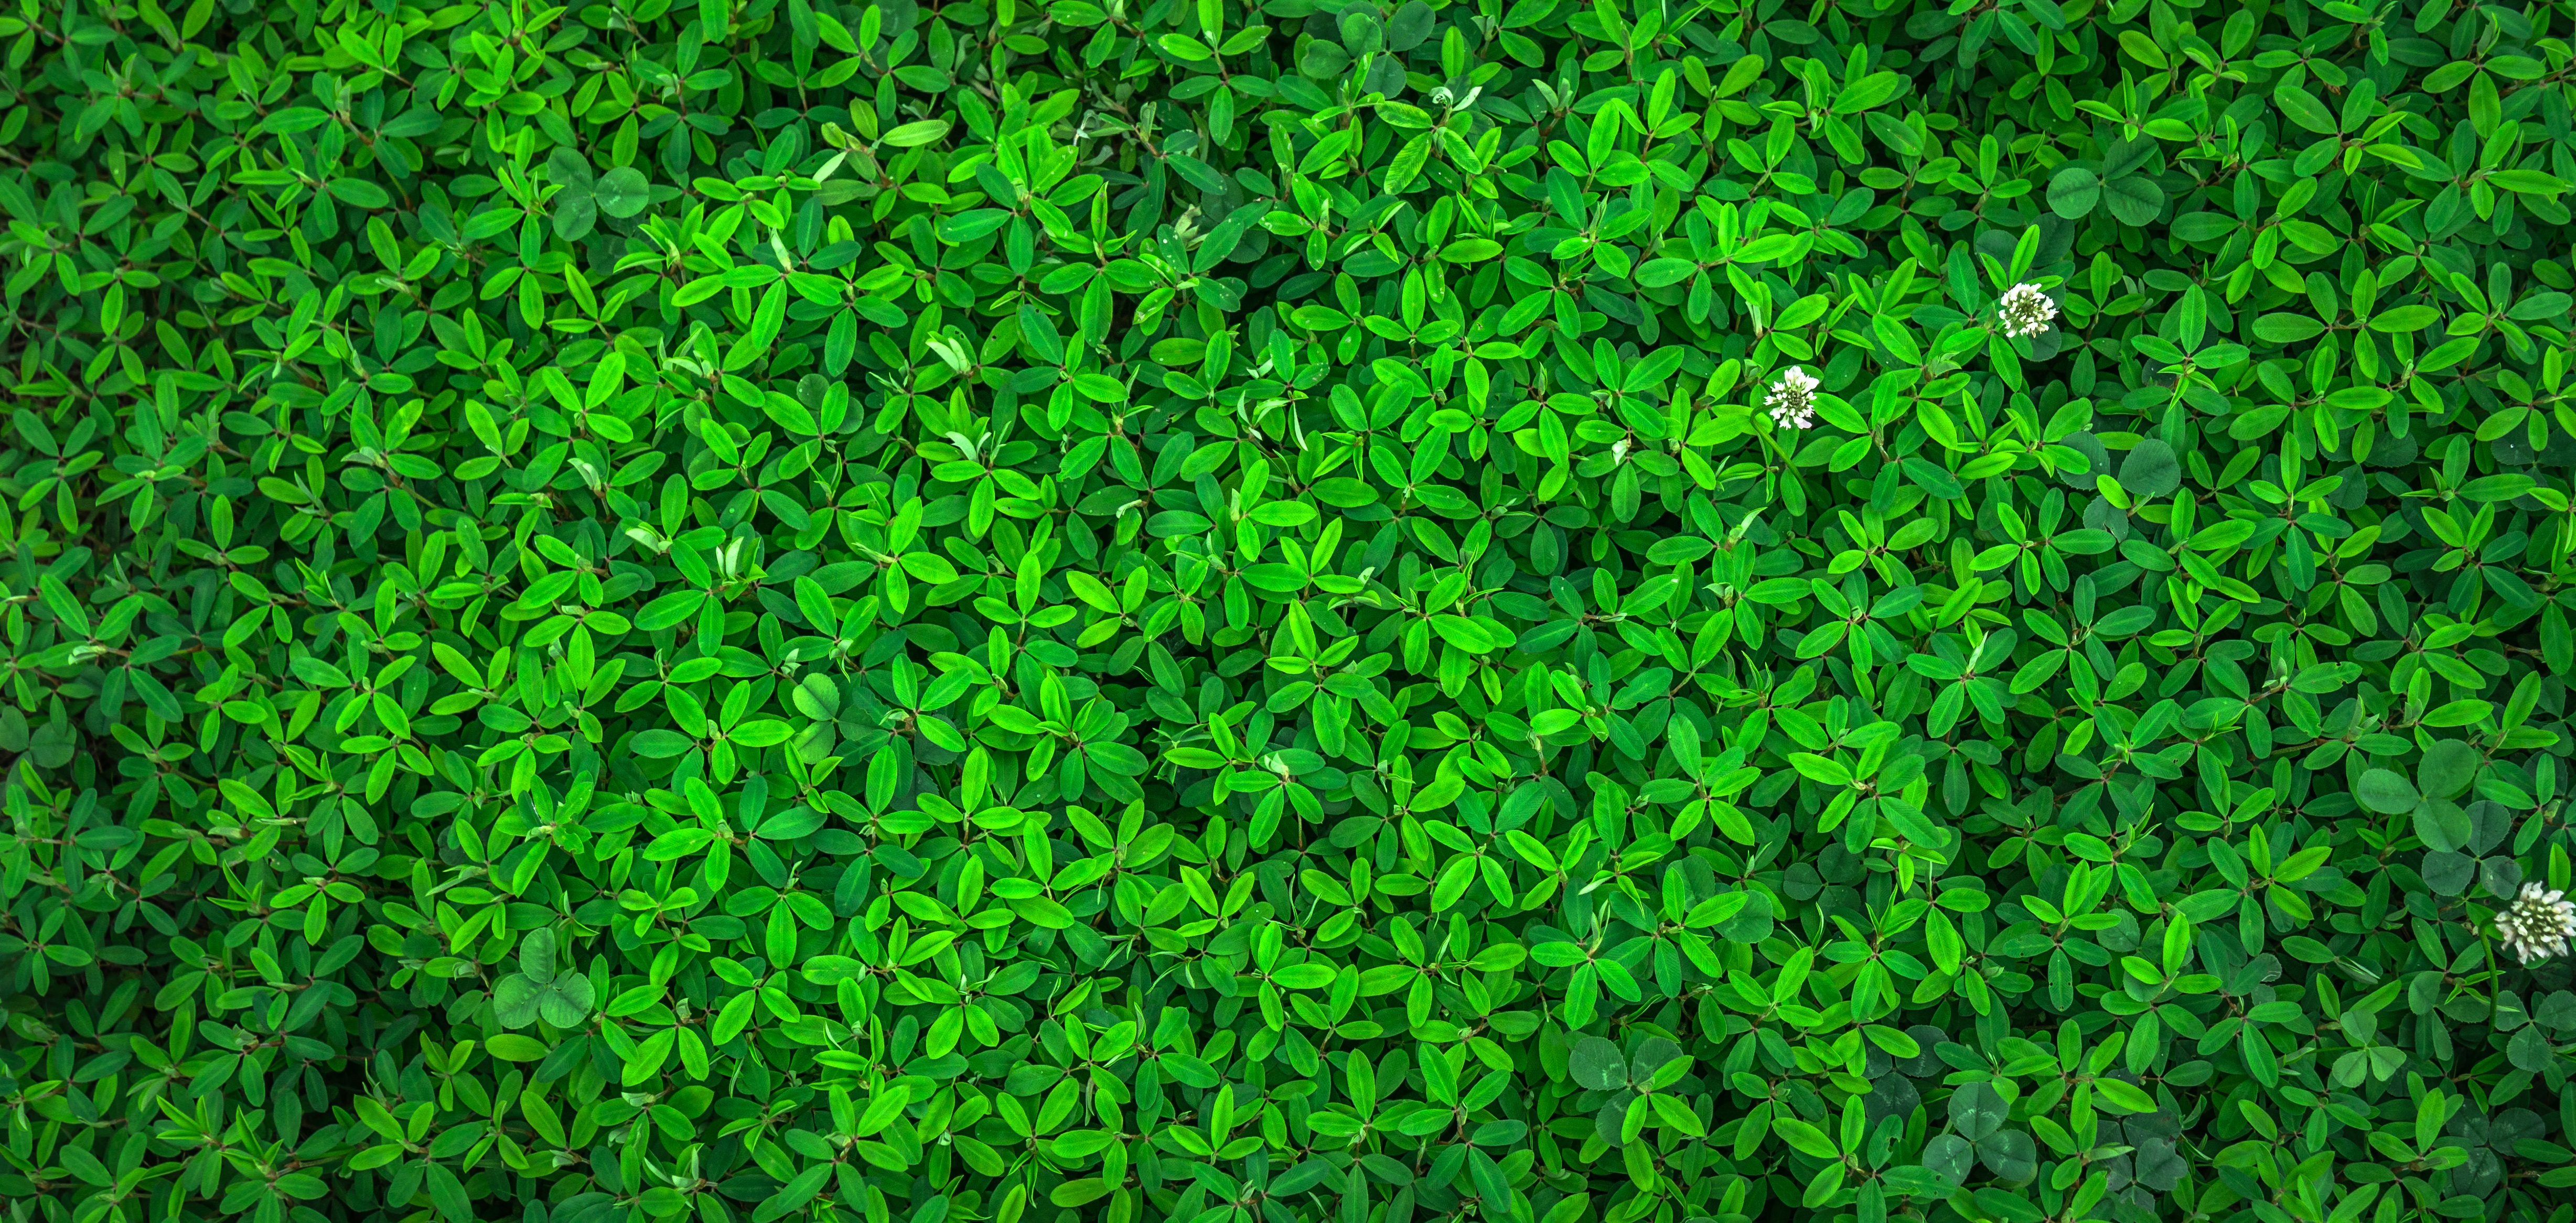 Бесплатное фото Фон из зеленого яркого кустарника